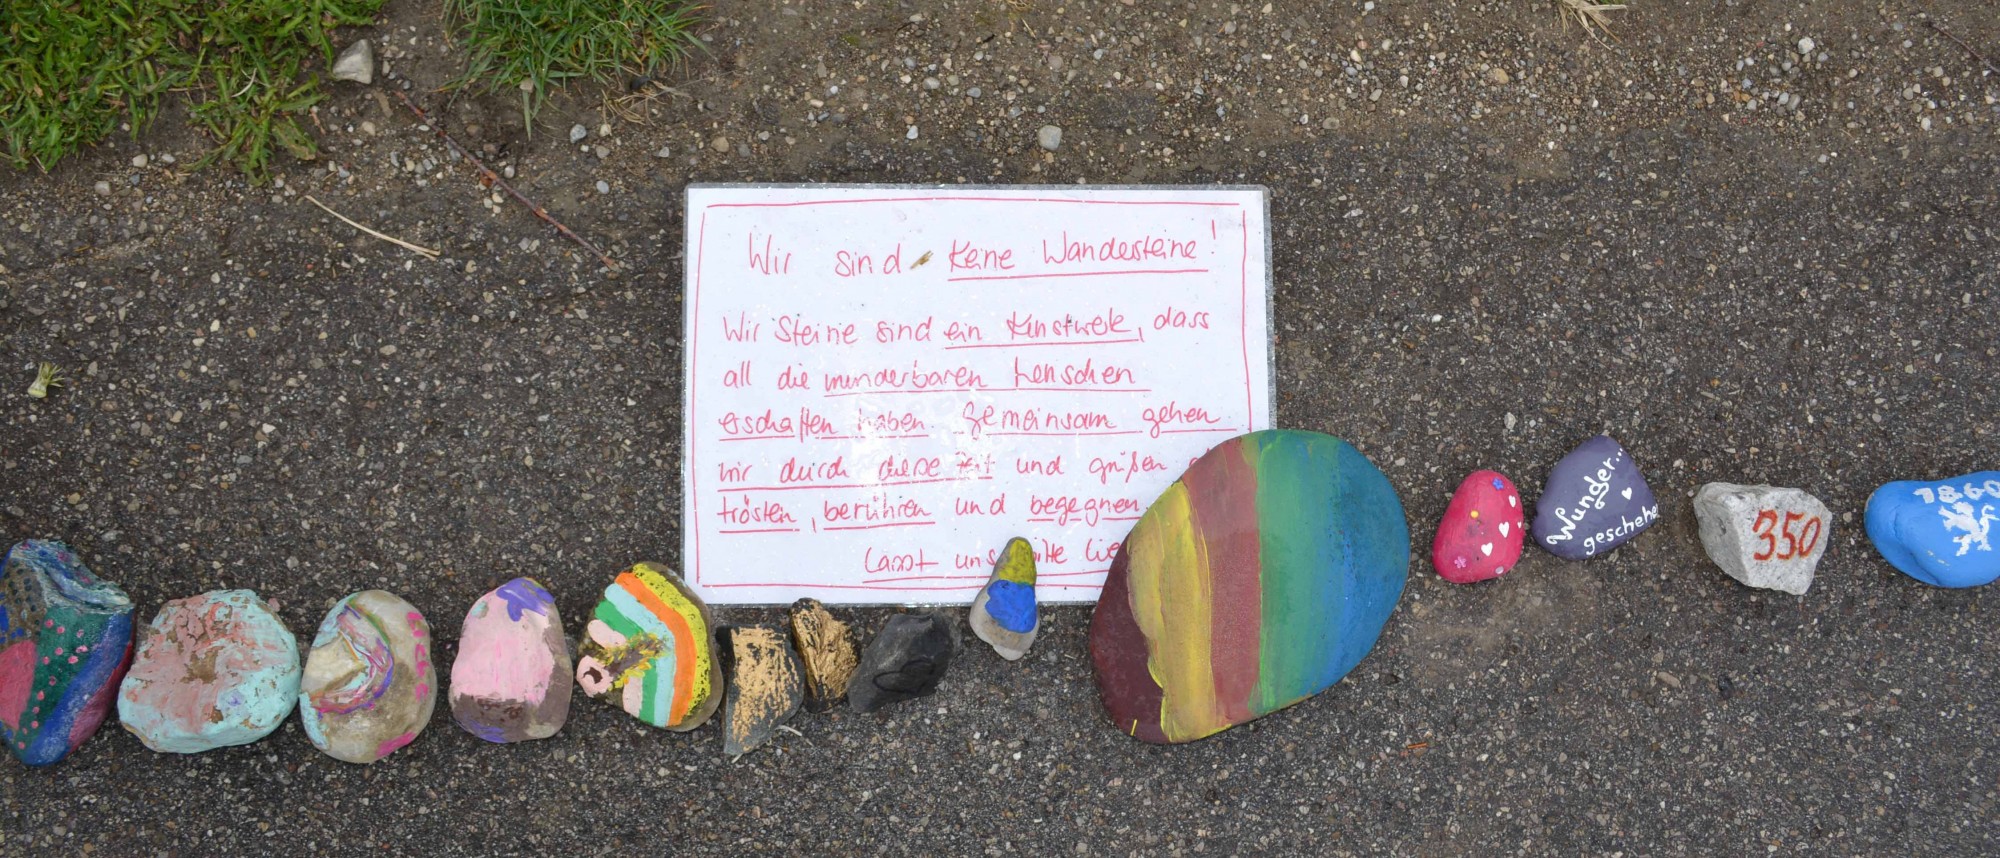 Eine Reihe bunt bemalter Steine am Straßenrand mit handgeschriebenem Text zur Idee.